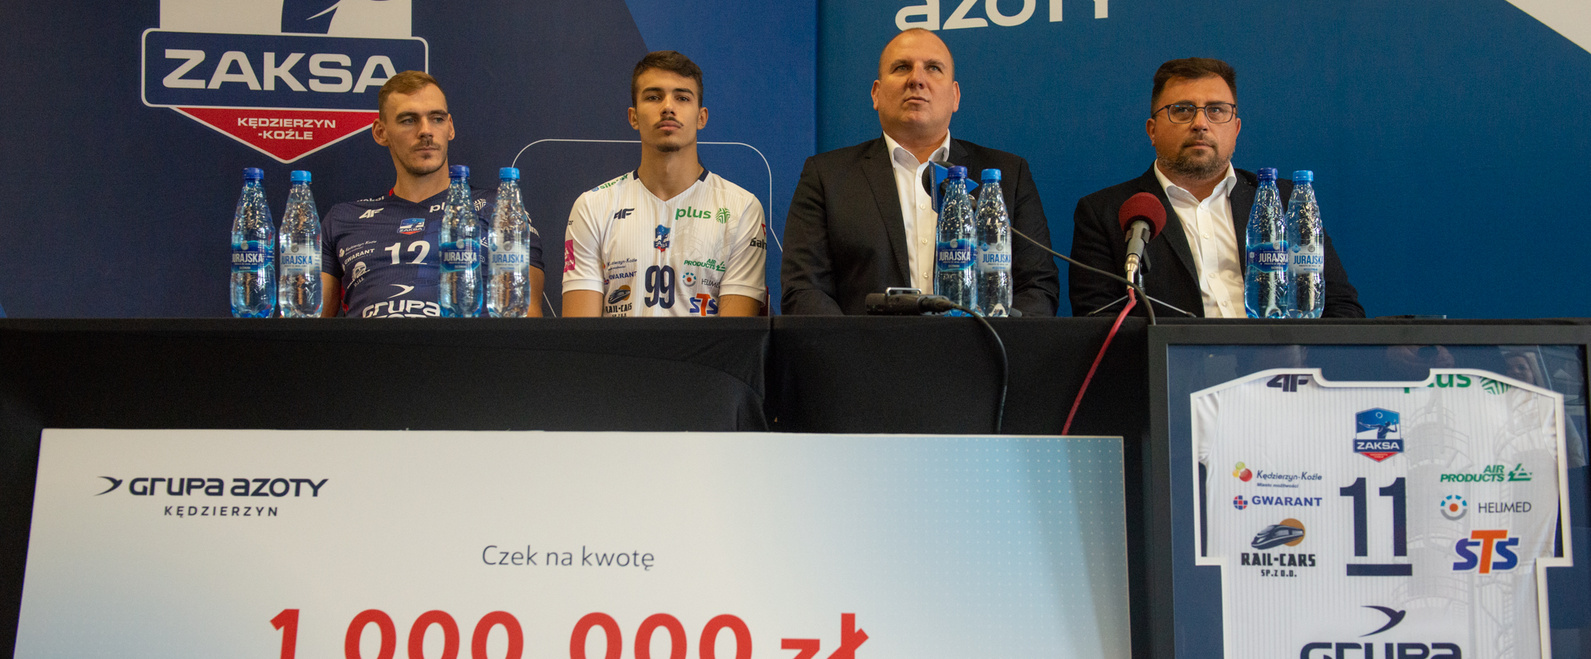 ZAKSA S.A. z kolejnym wyróżnieniem, otrzymała nagrodę za wybitne osiągnięcia sportowe od Głównego Sponsora i Właściciela Klubu - Grupy Azoty ZAK S.A.